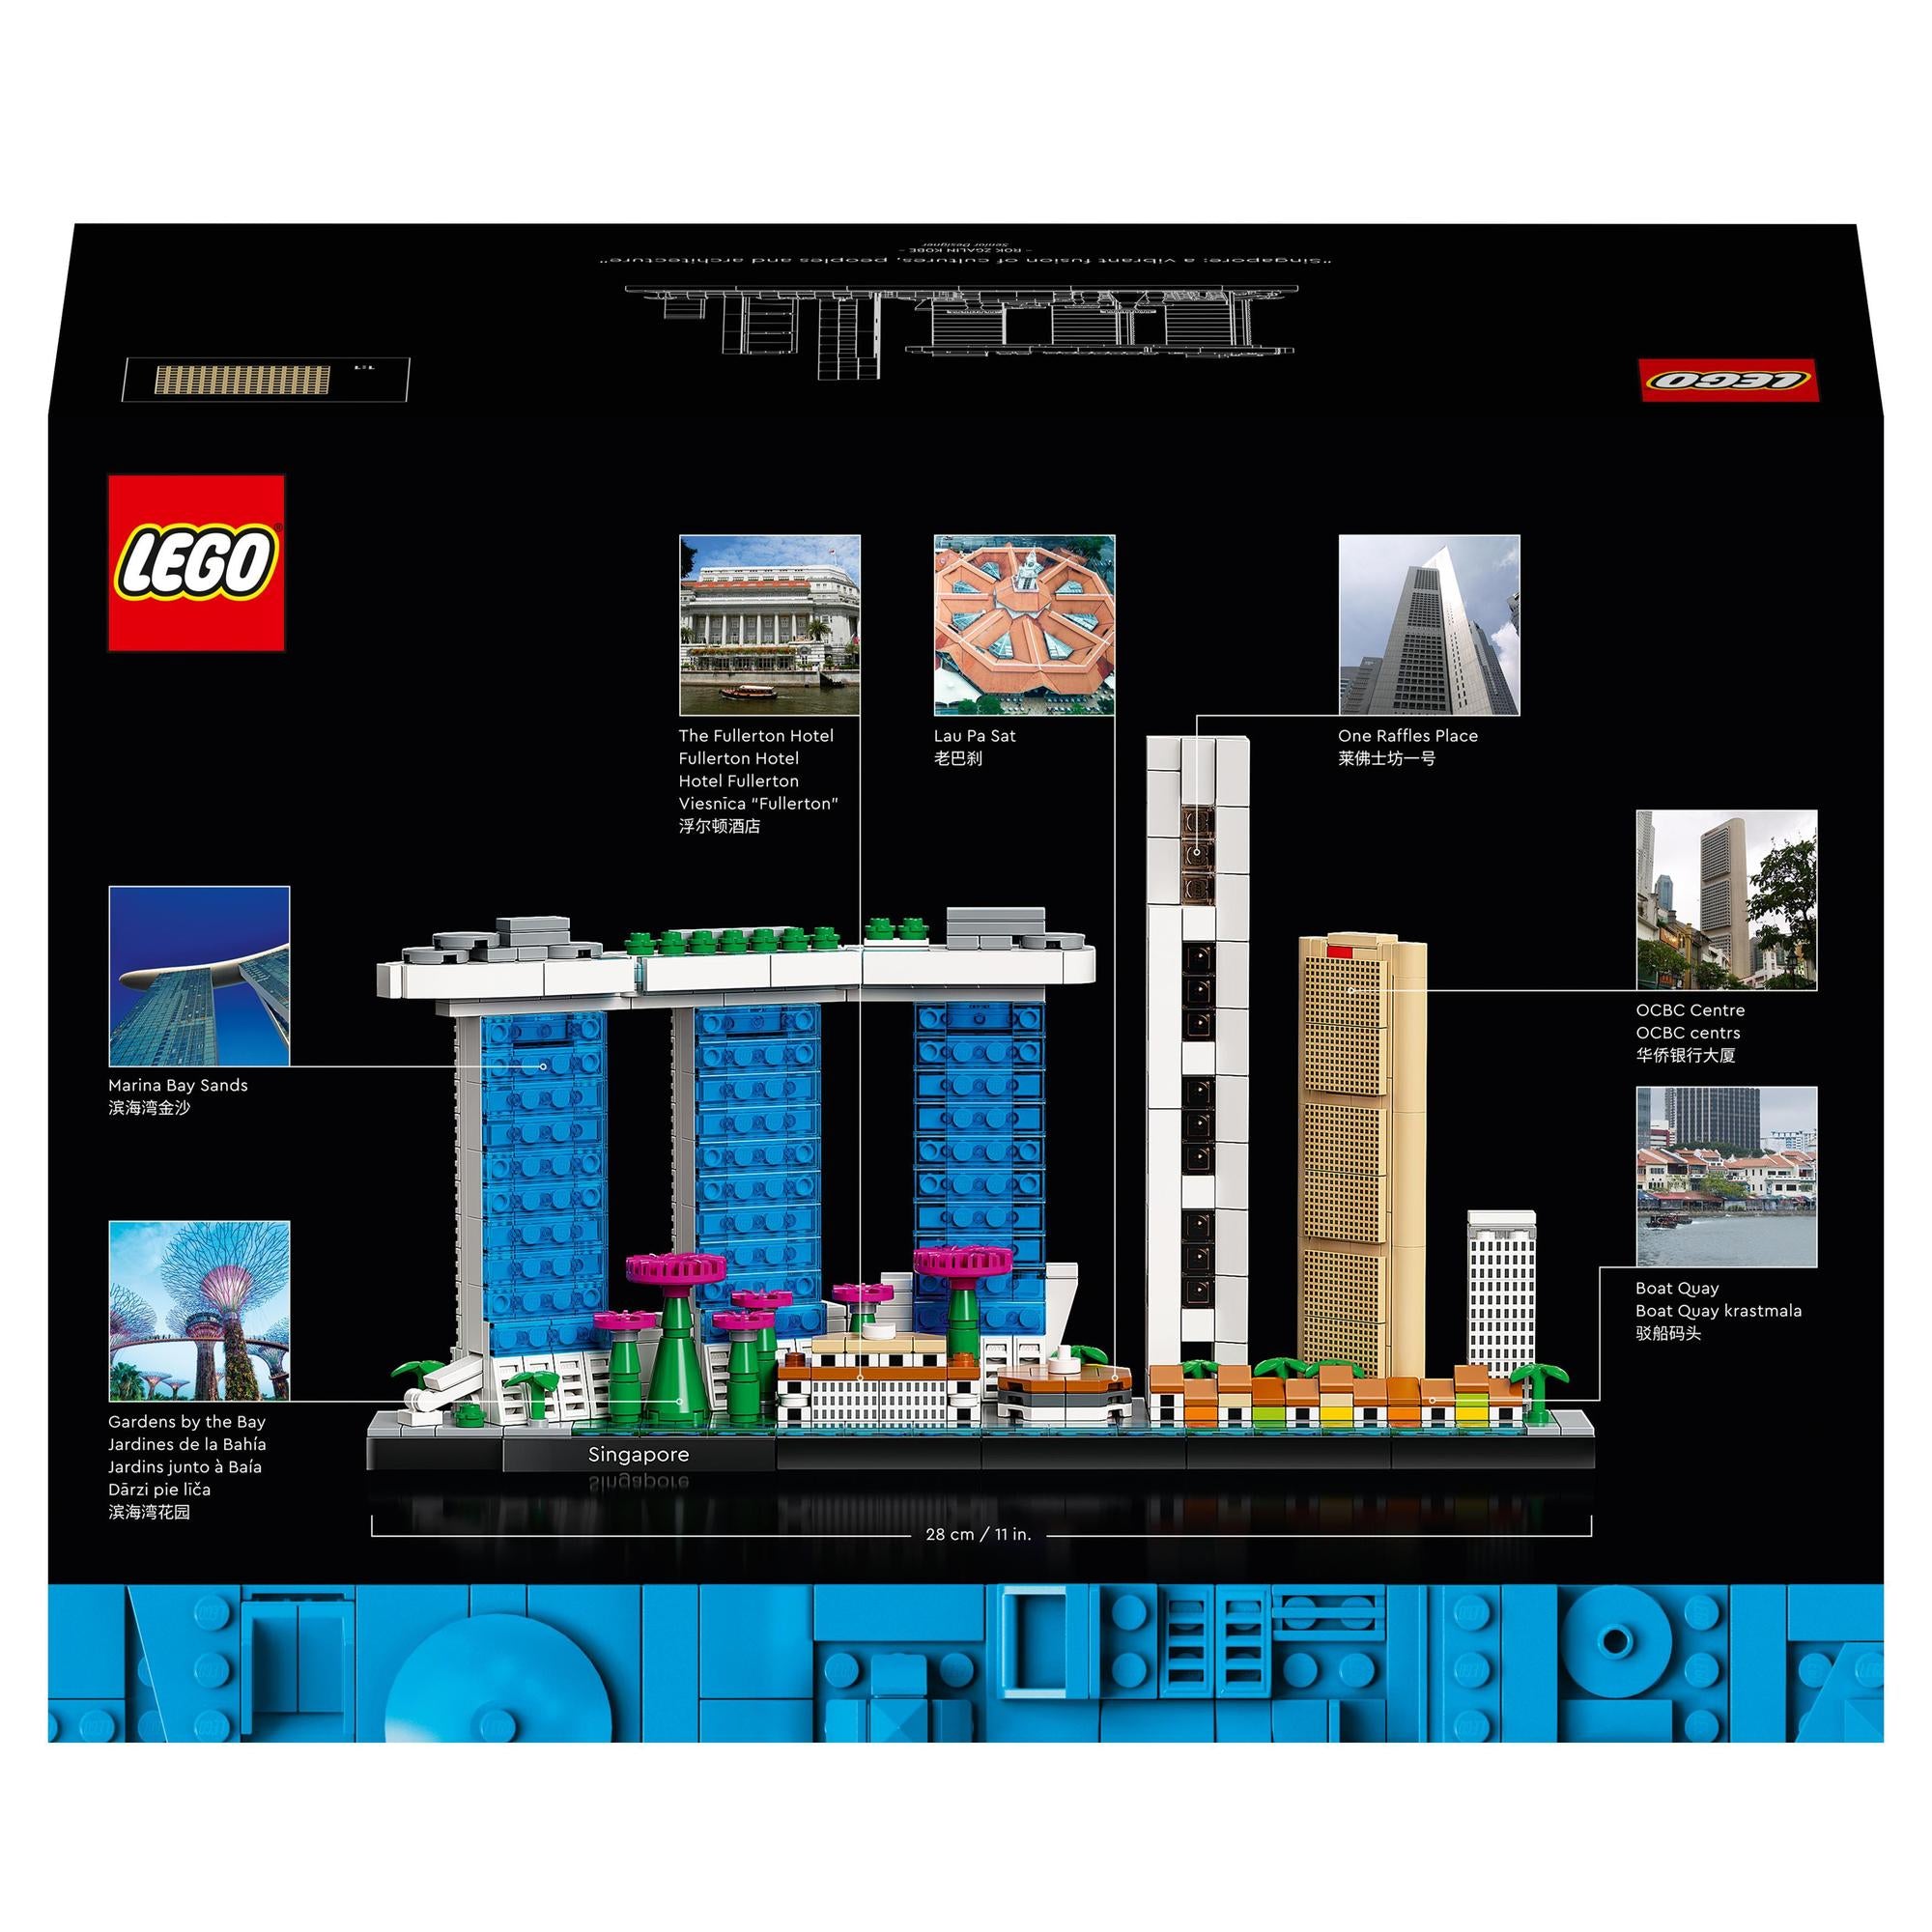 LEGO® | 21057 | Singapur